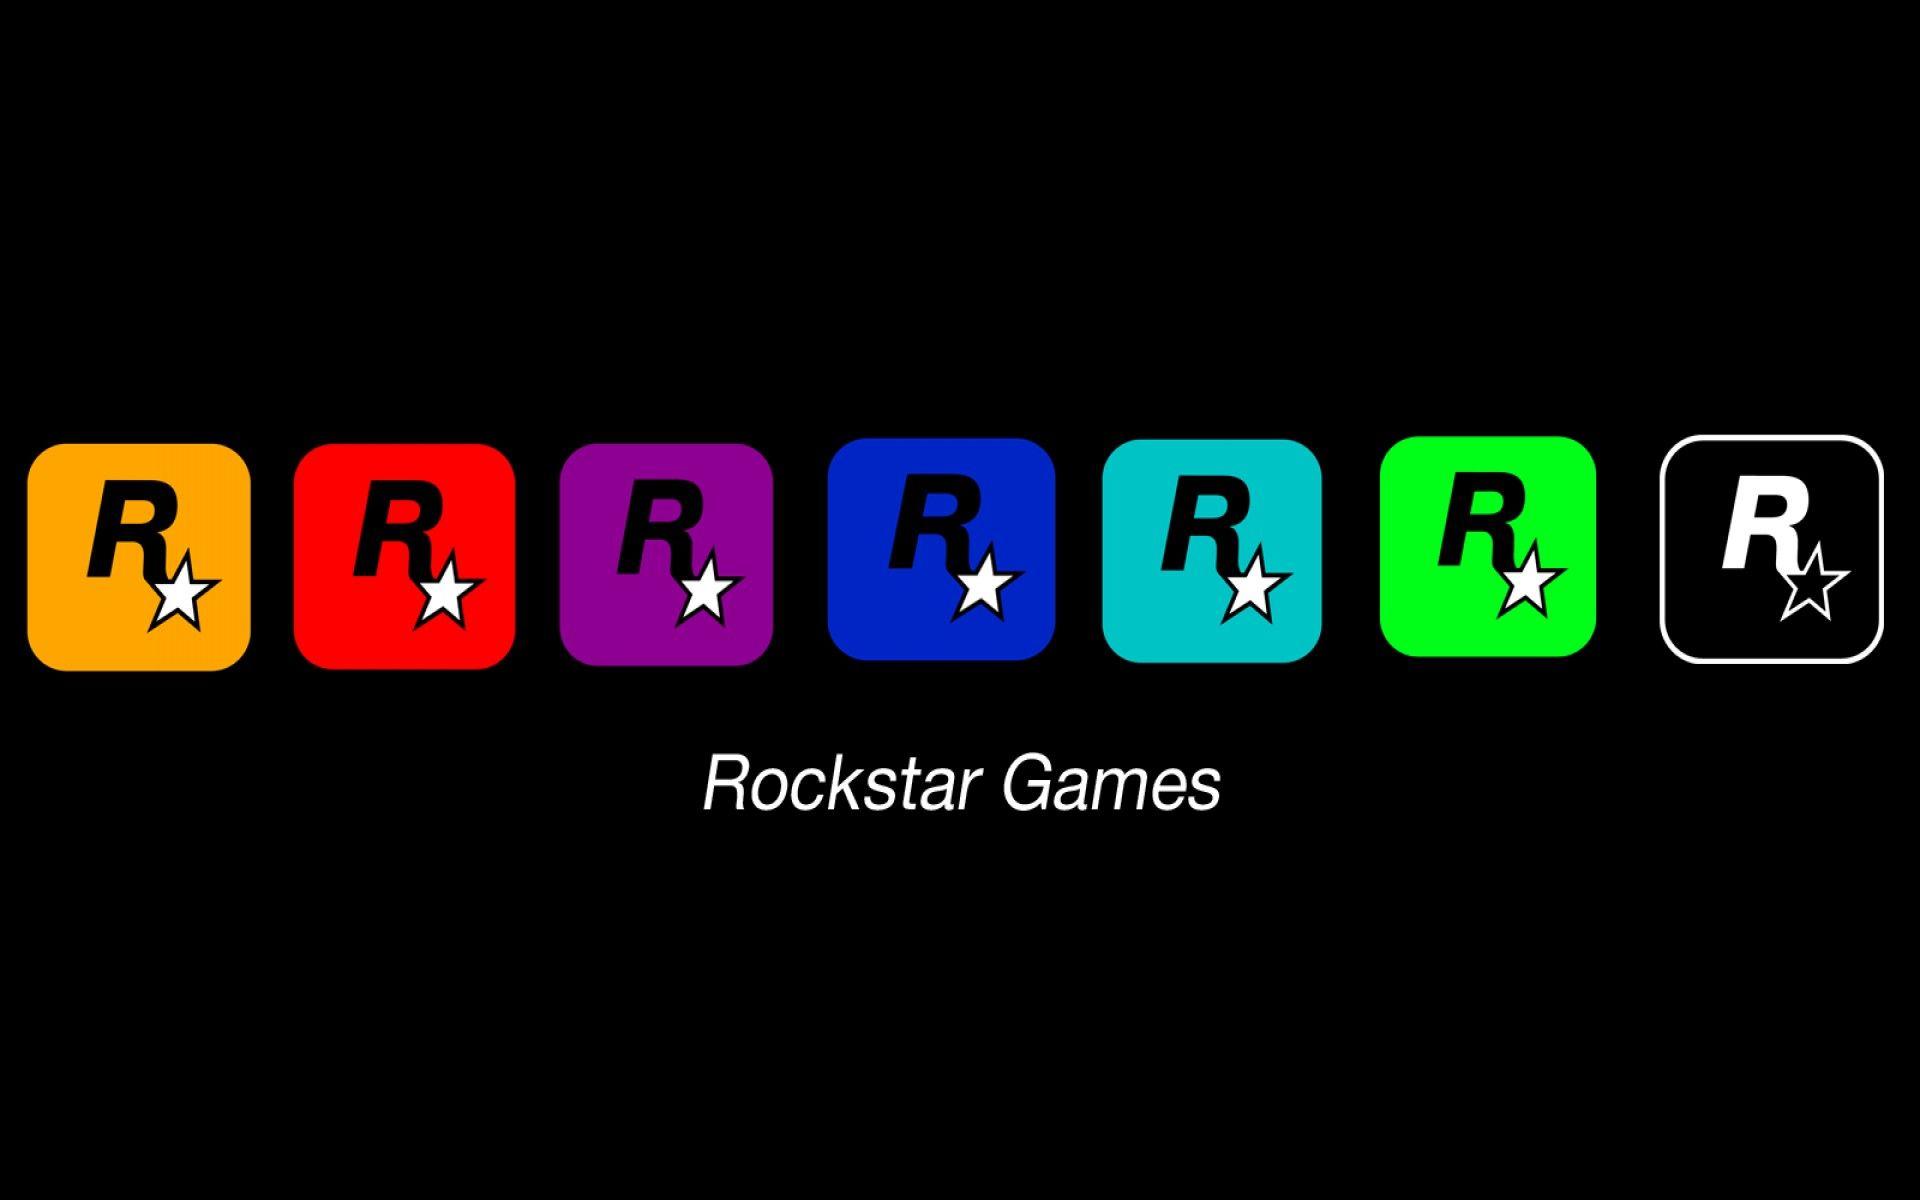 Rockstar Games Logo - Rockstar games logos wallpaper. PC